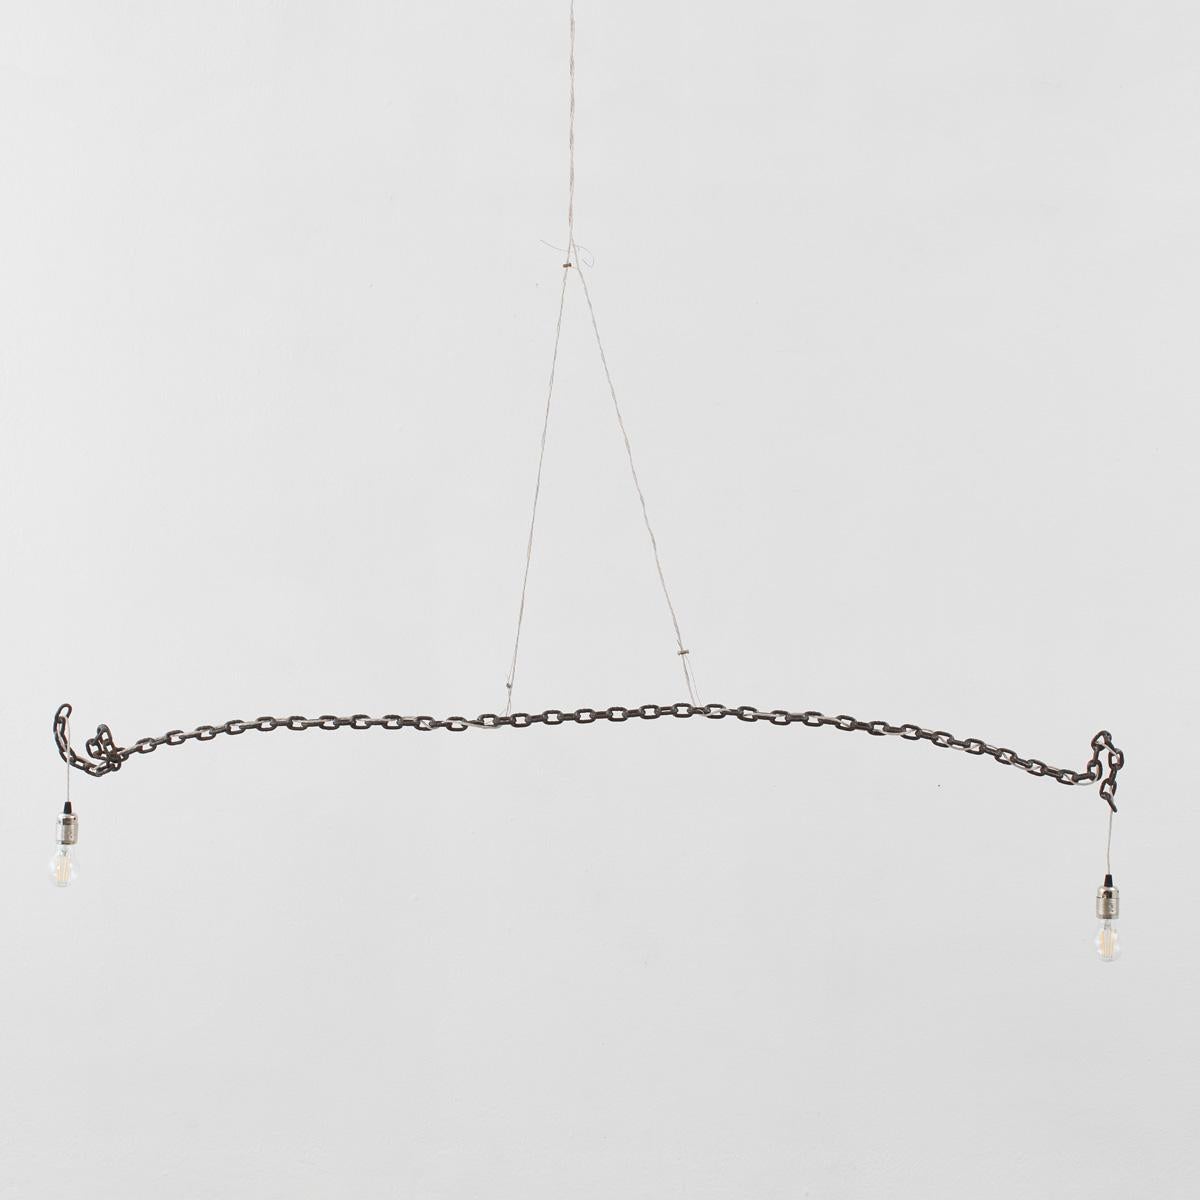 Franz West (1947-2012) était connu pour ses sculptures et ses meubles provocateurs, qui repoussent les limites. Son travail visait à élargir la manière dont le public interagit avec l'art et les objets fonctionnels. S'inspirant des mouvements d'art